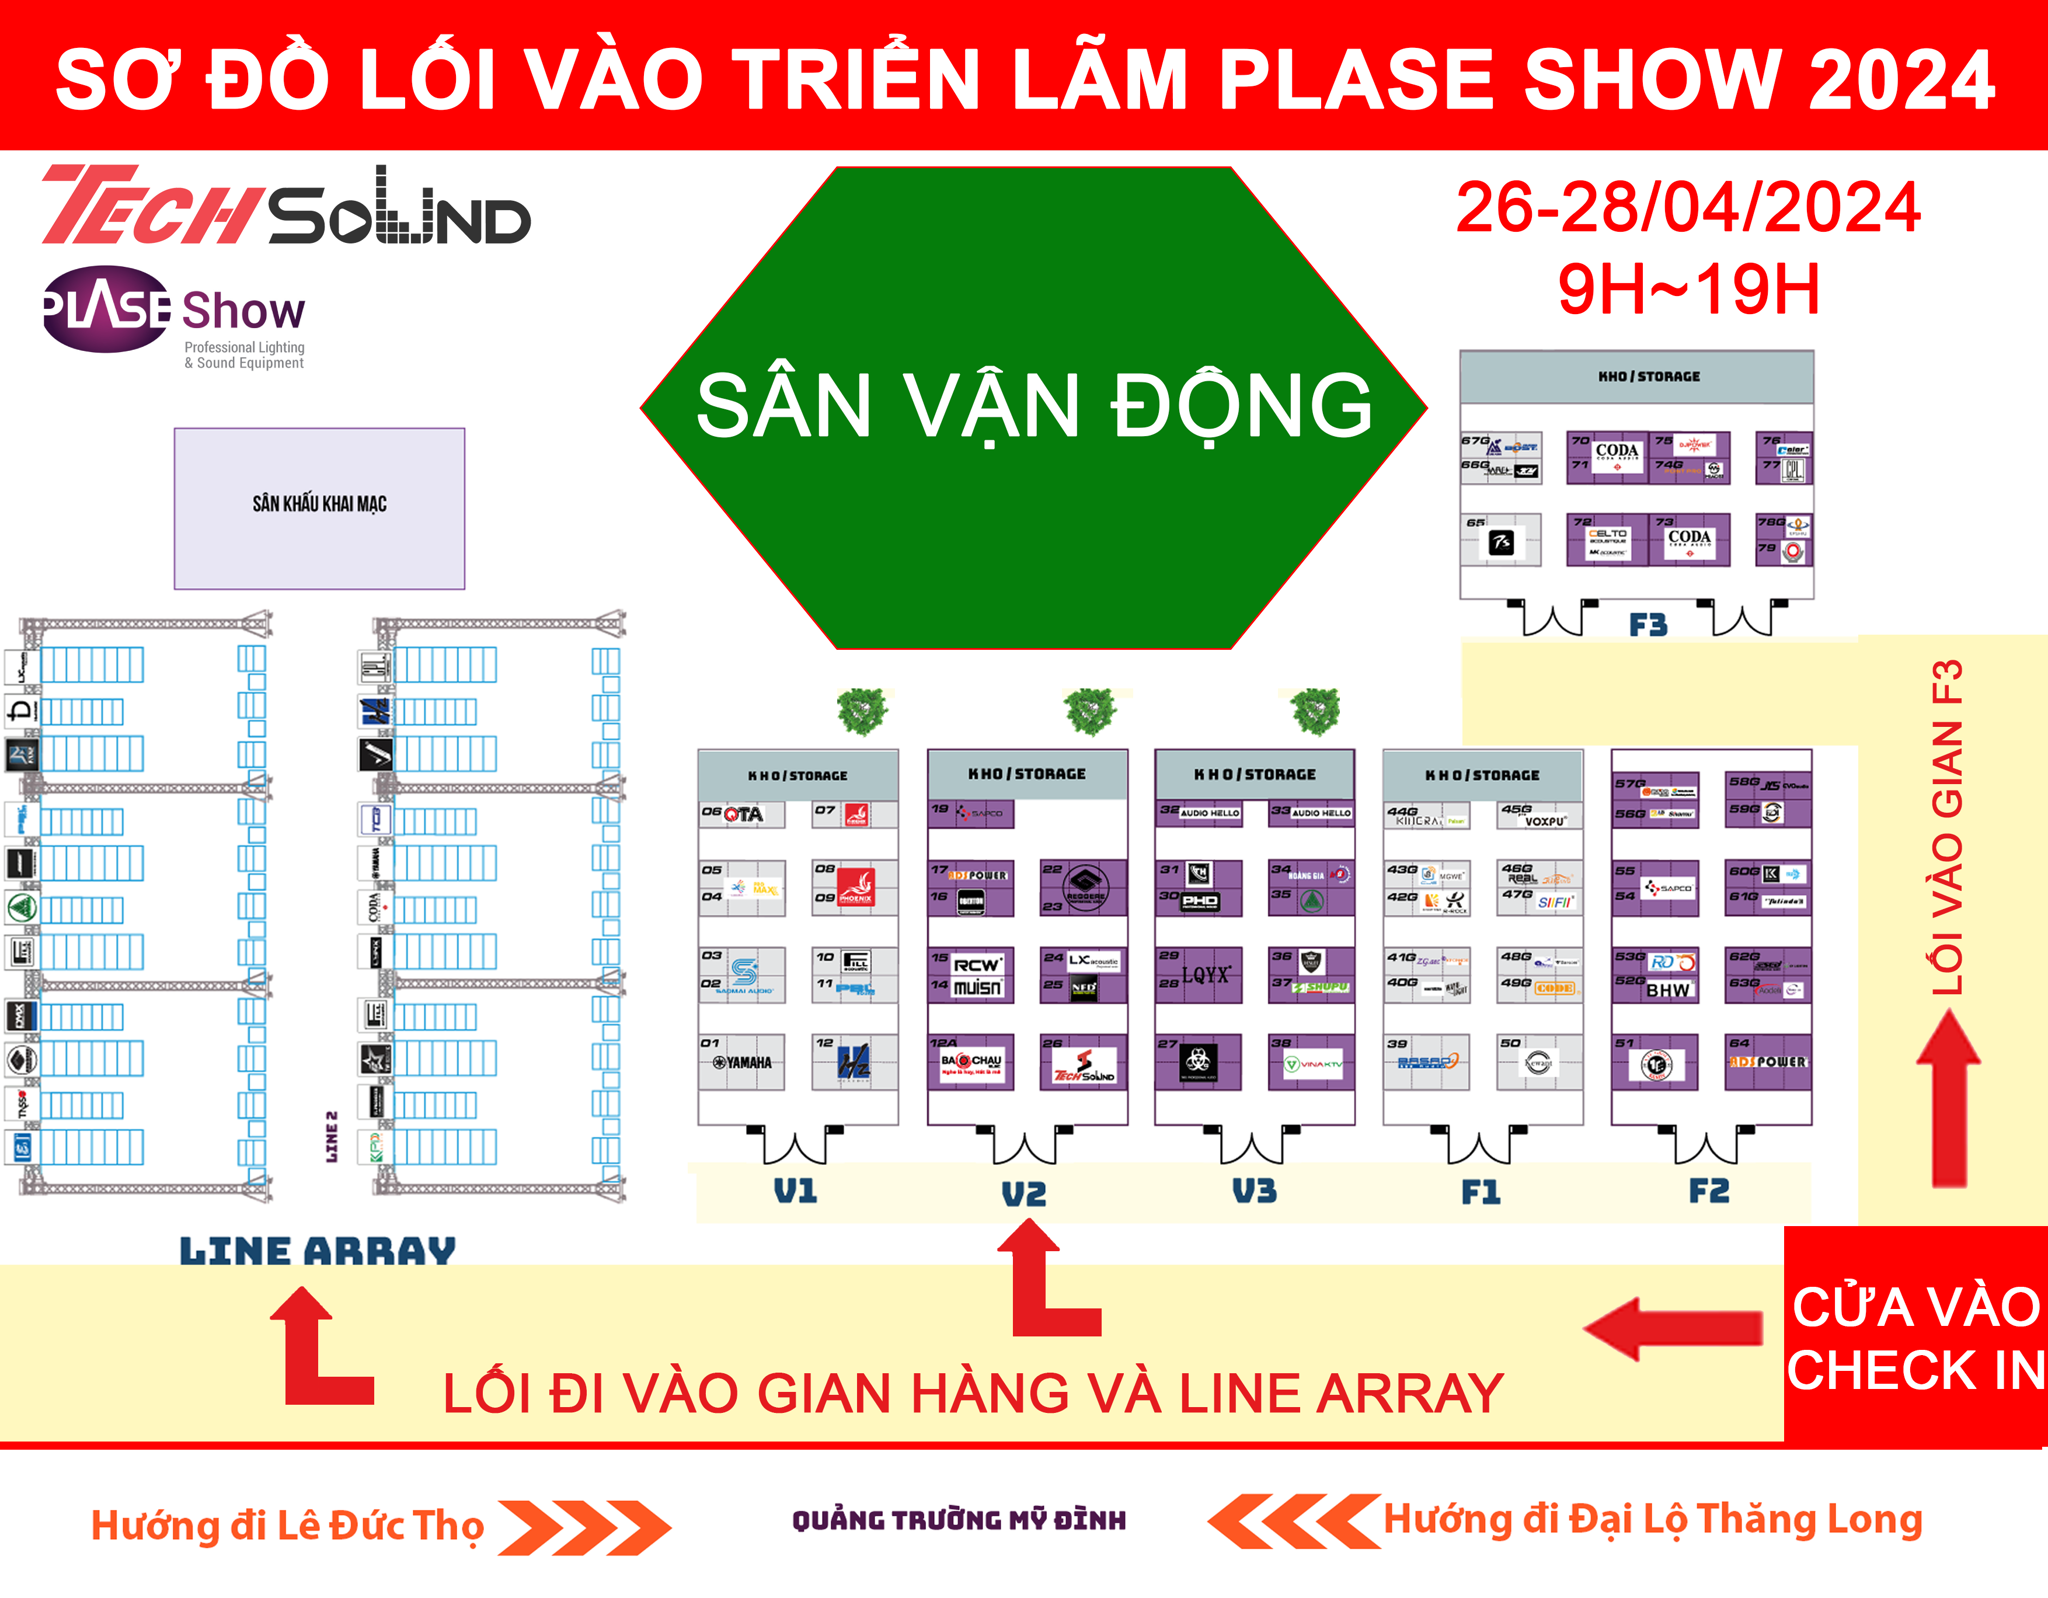 Đây là sơ đồ chi tiết hướng dẫn lối đi vào tham quan các gian hàng và khu vực trình diễn Line array tại Plase Show 2024.